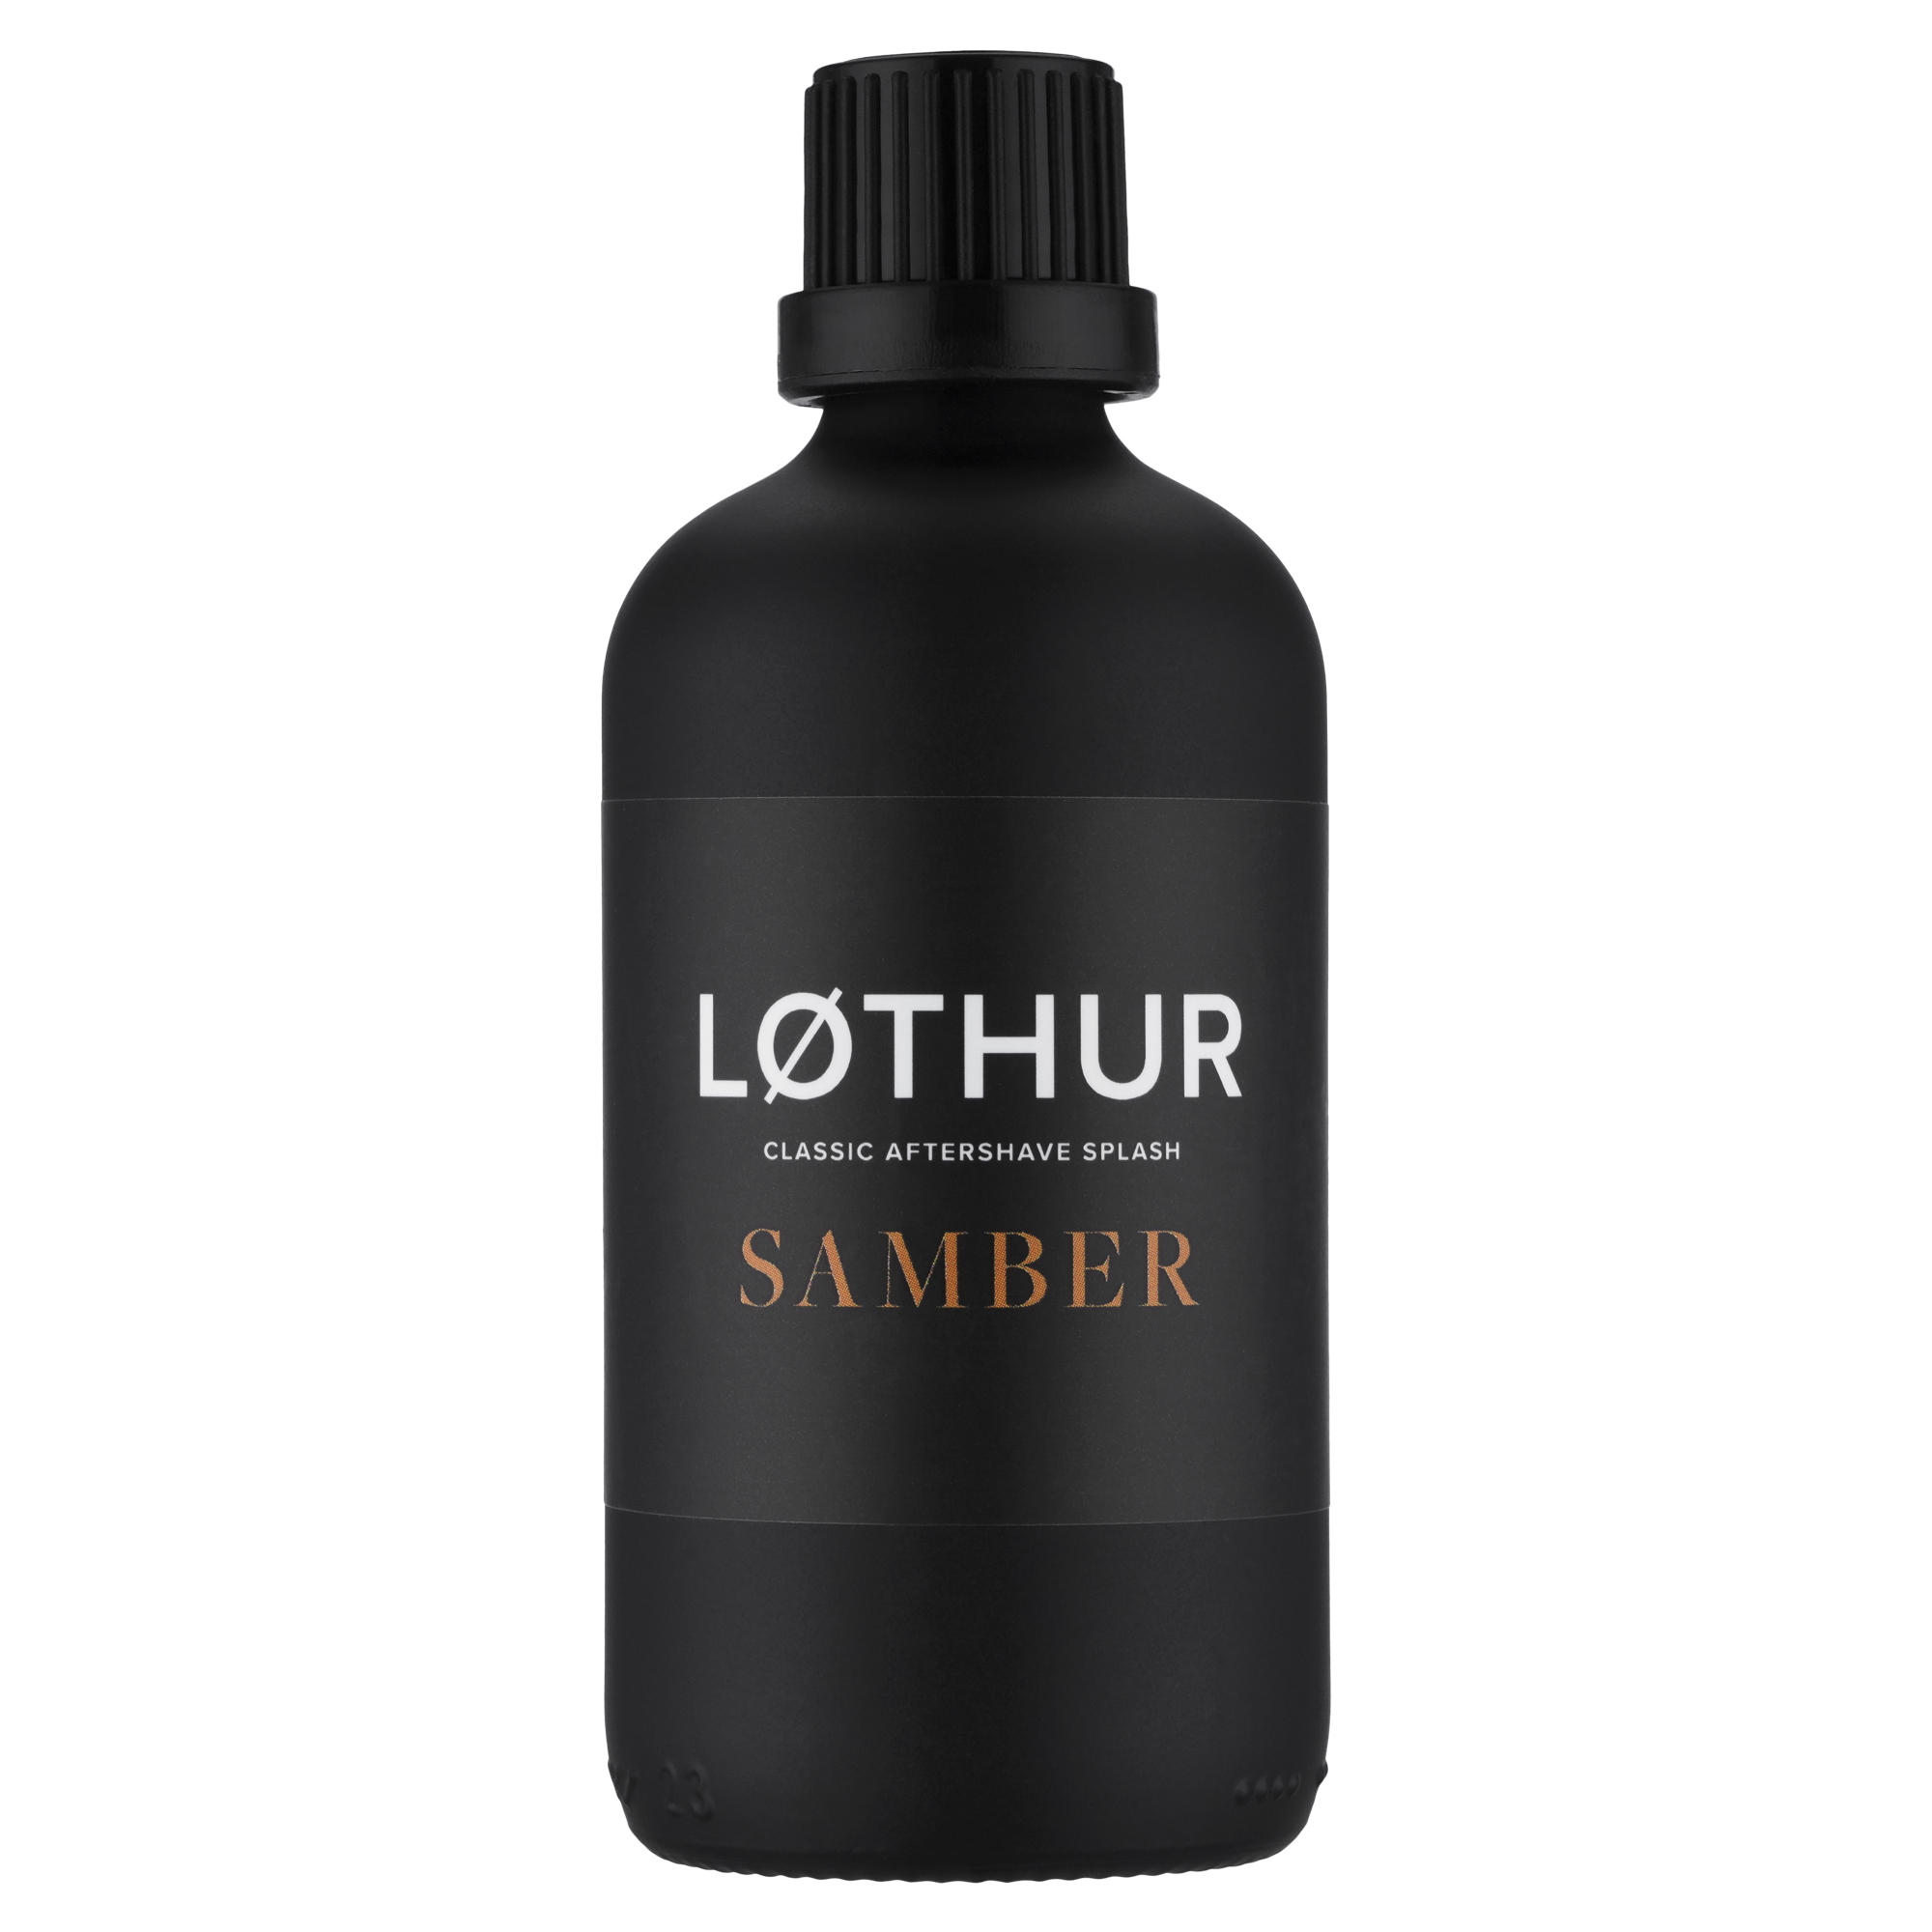 Lothur Samber Aftershave Splash